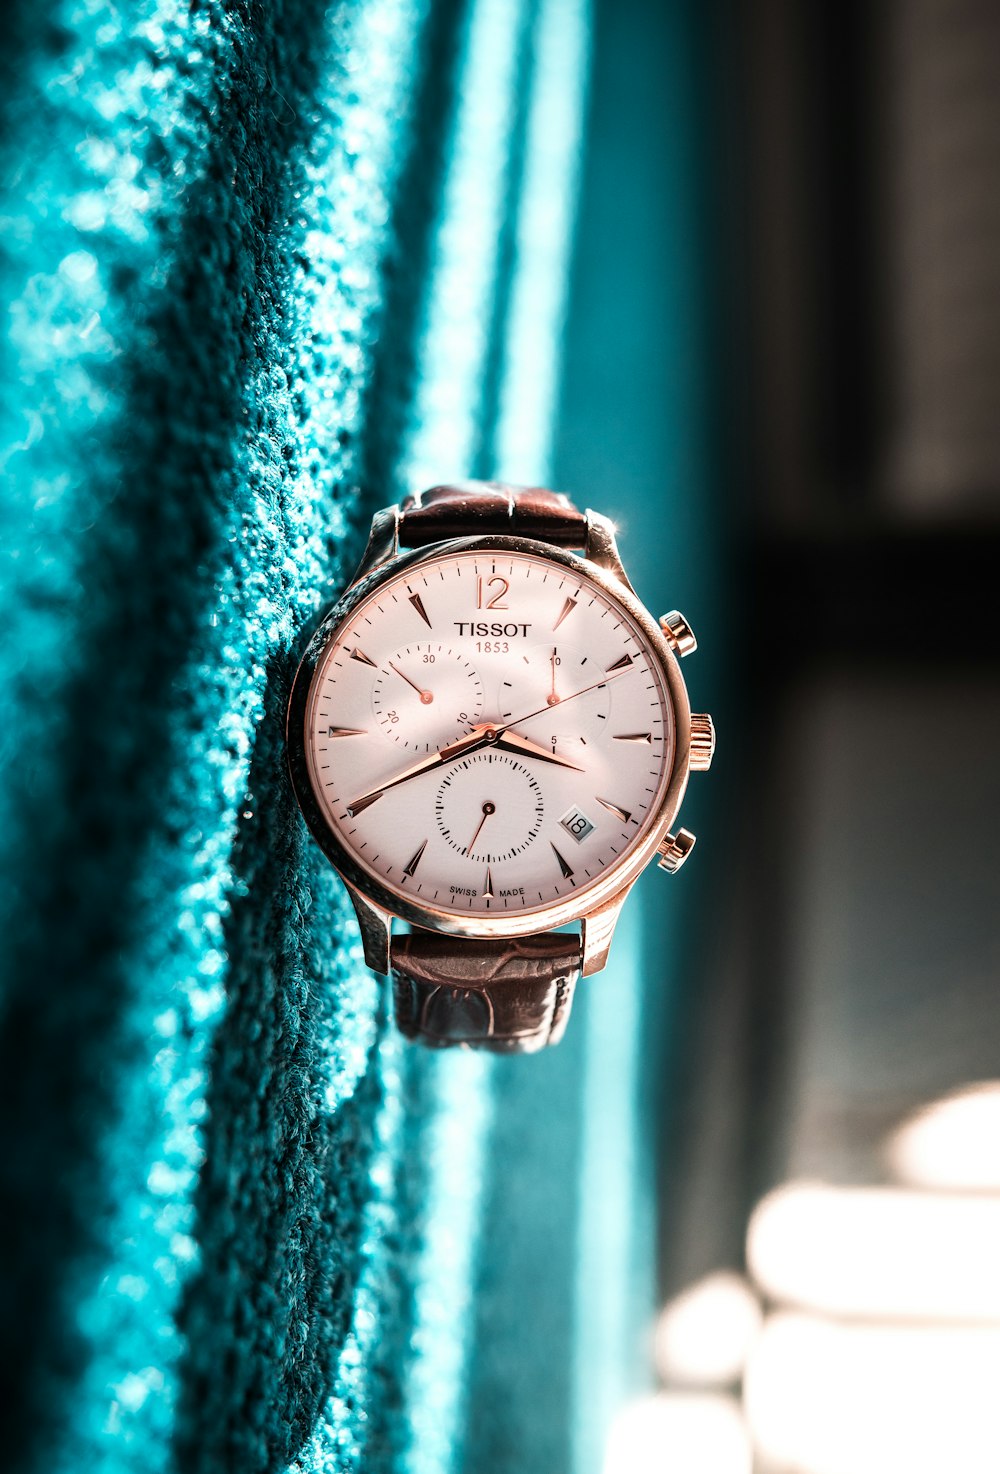 orologio cronografo Tissot rotondo color argento